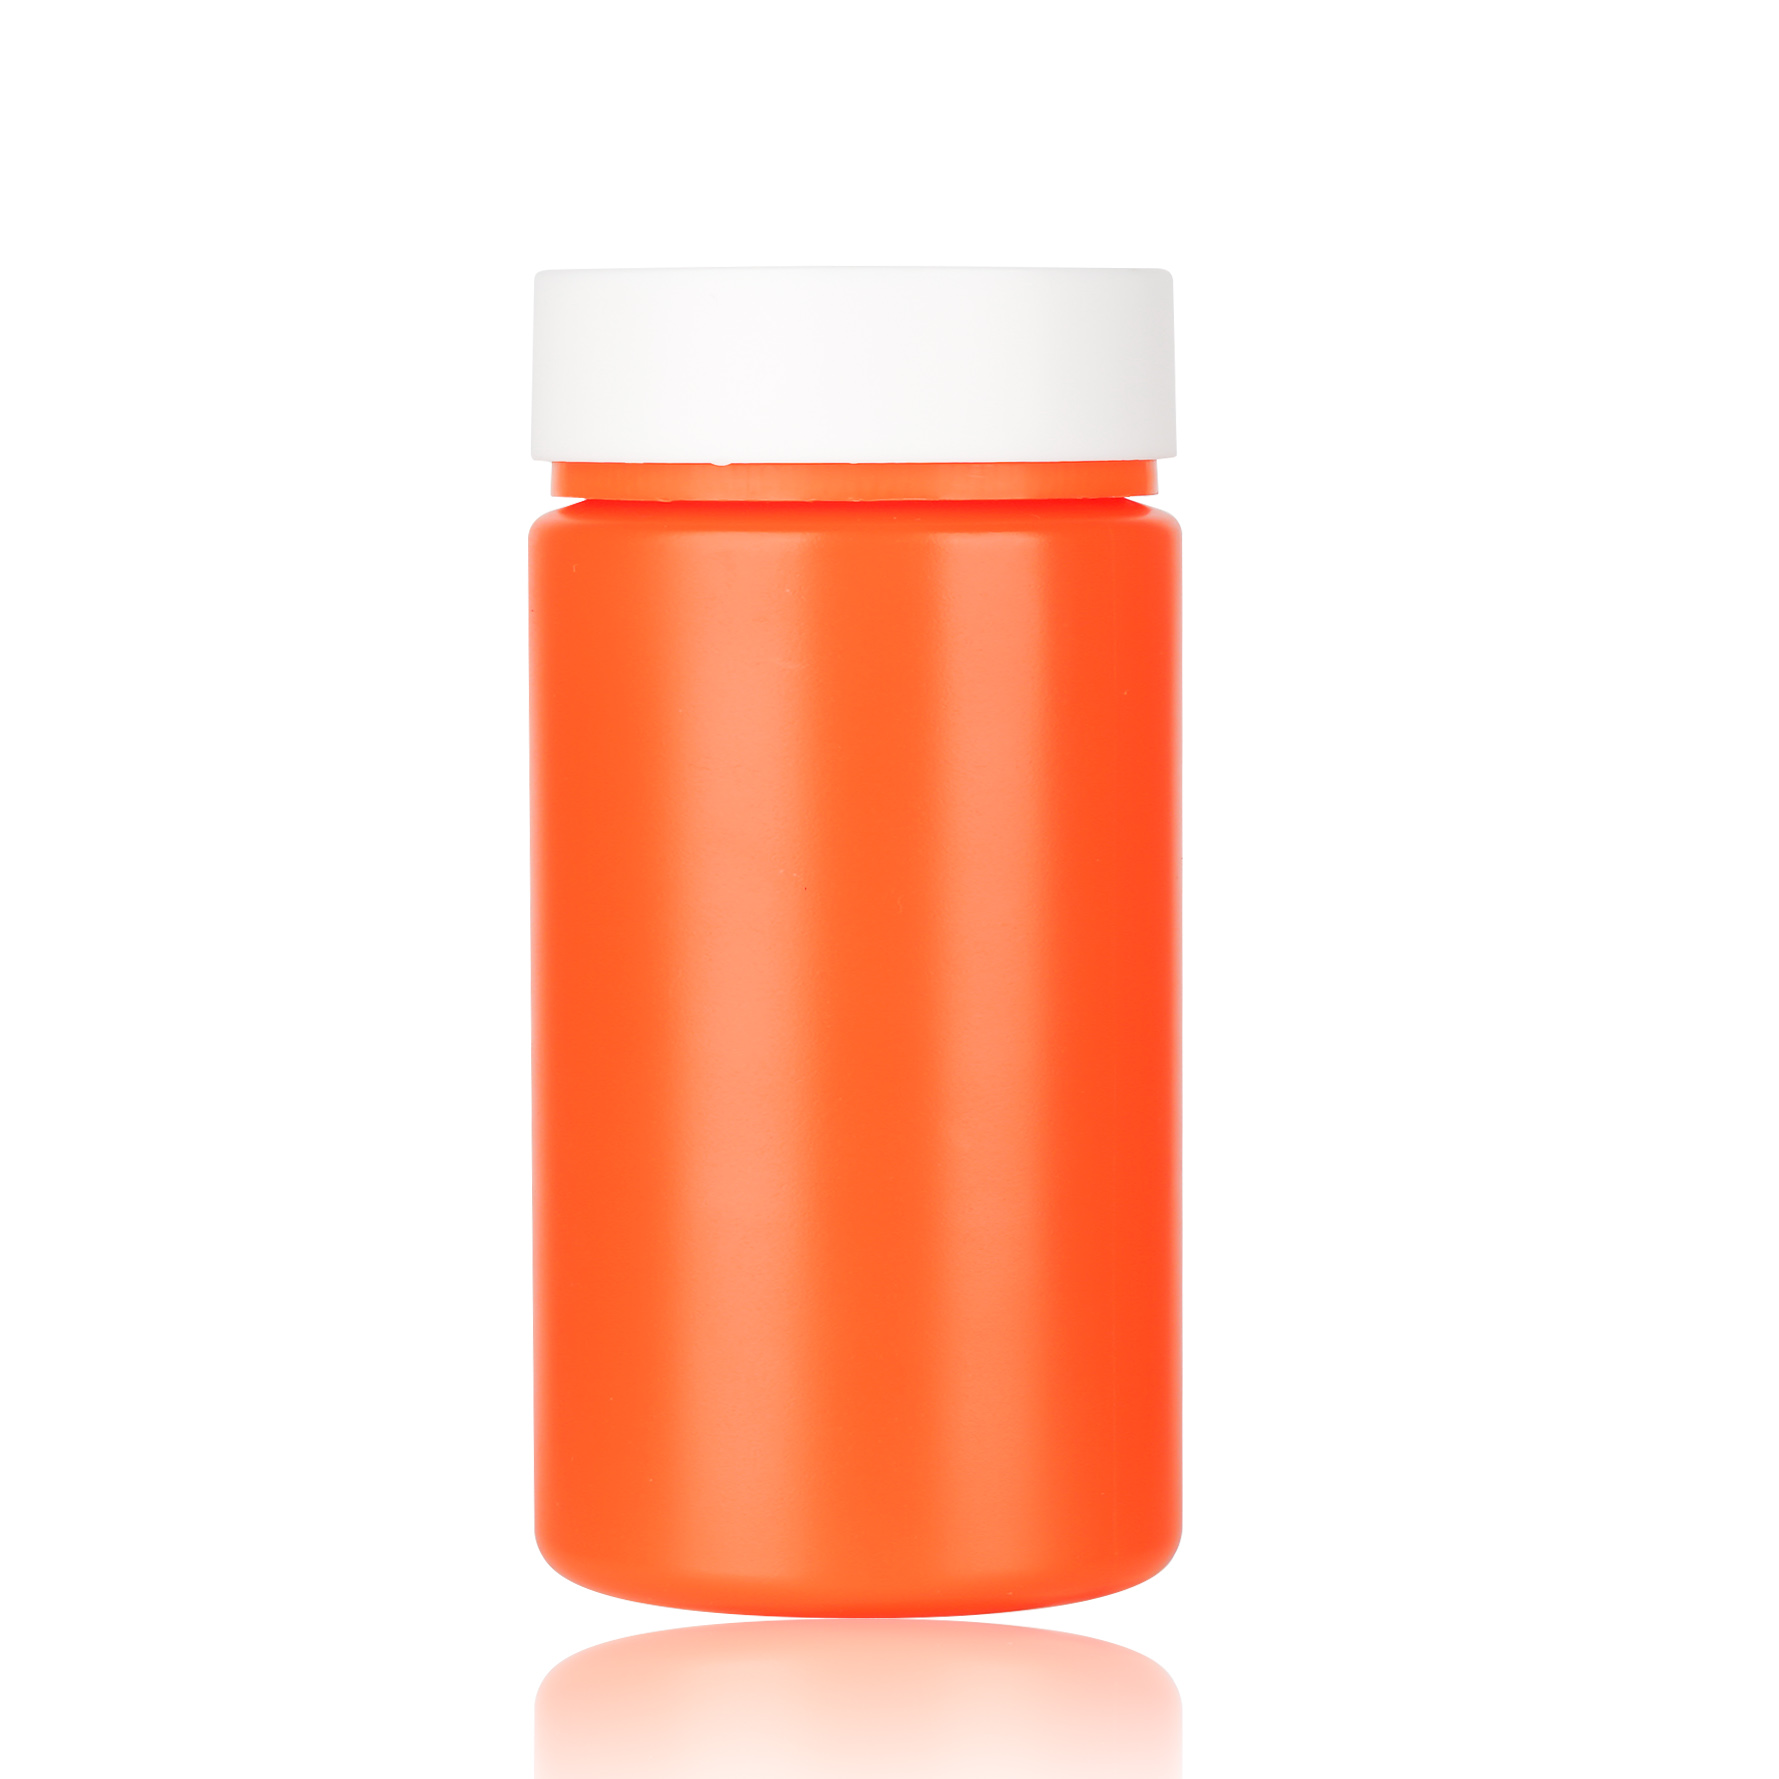 HDPE PCR Child Proof Jar Vitamin C Orange Capsule Container Pill Bottle Capsule Bottle